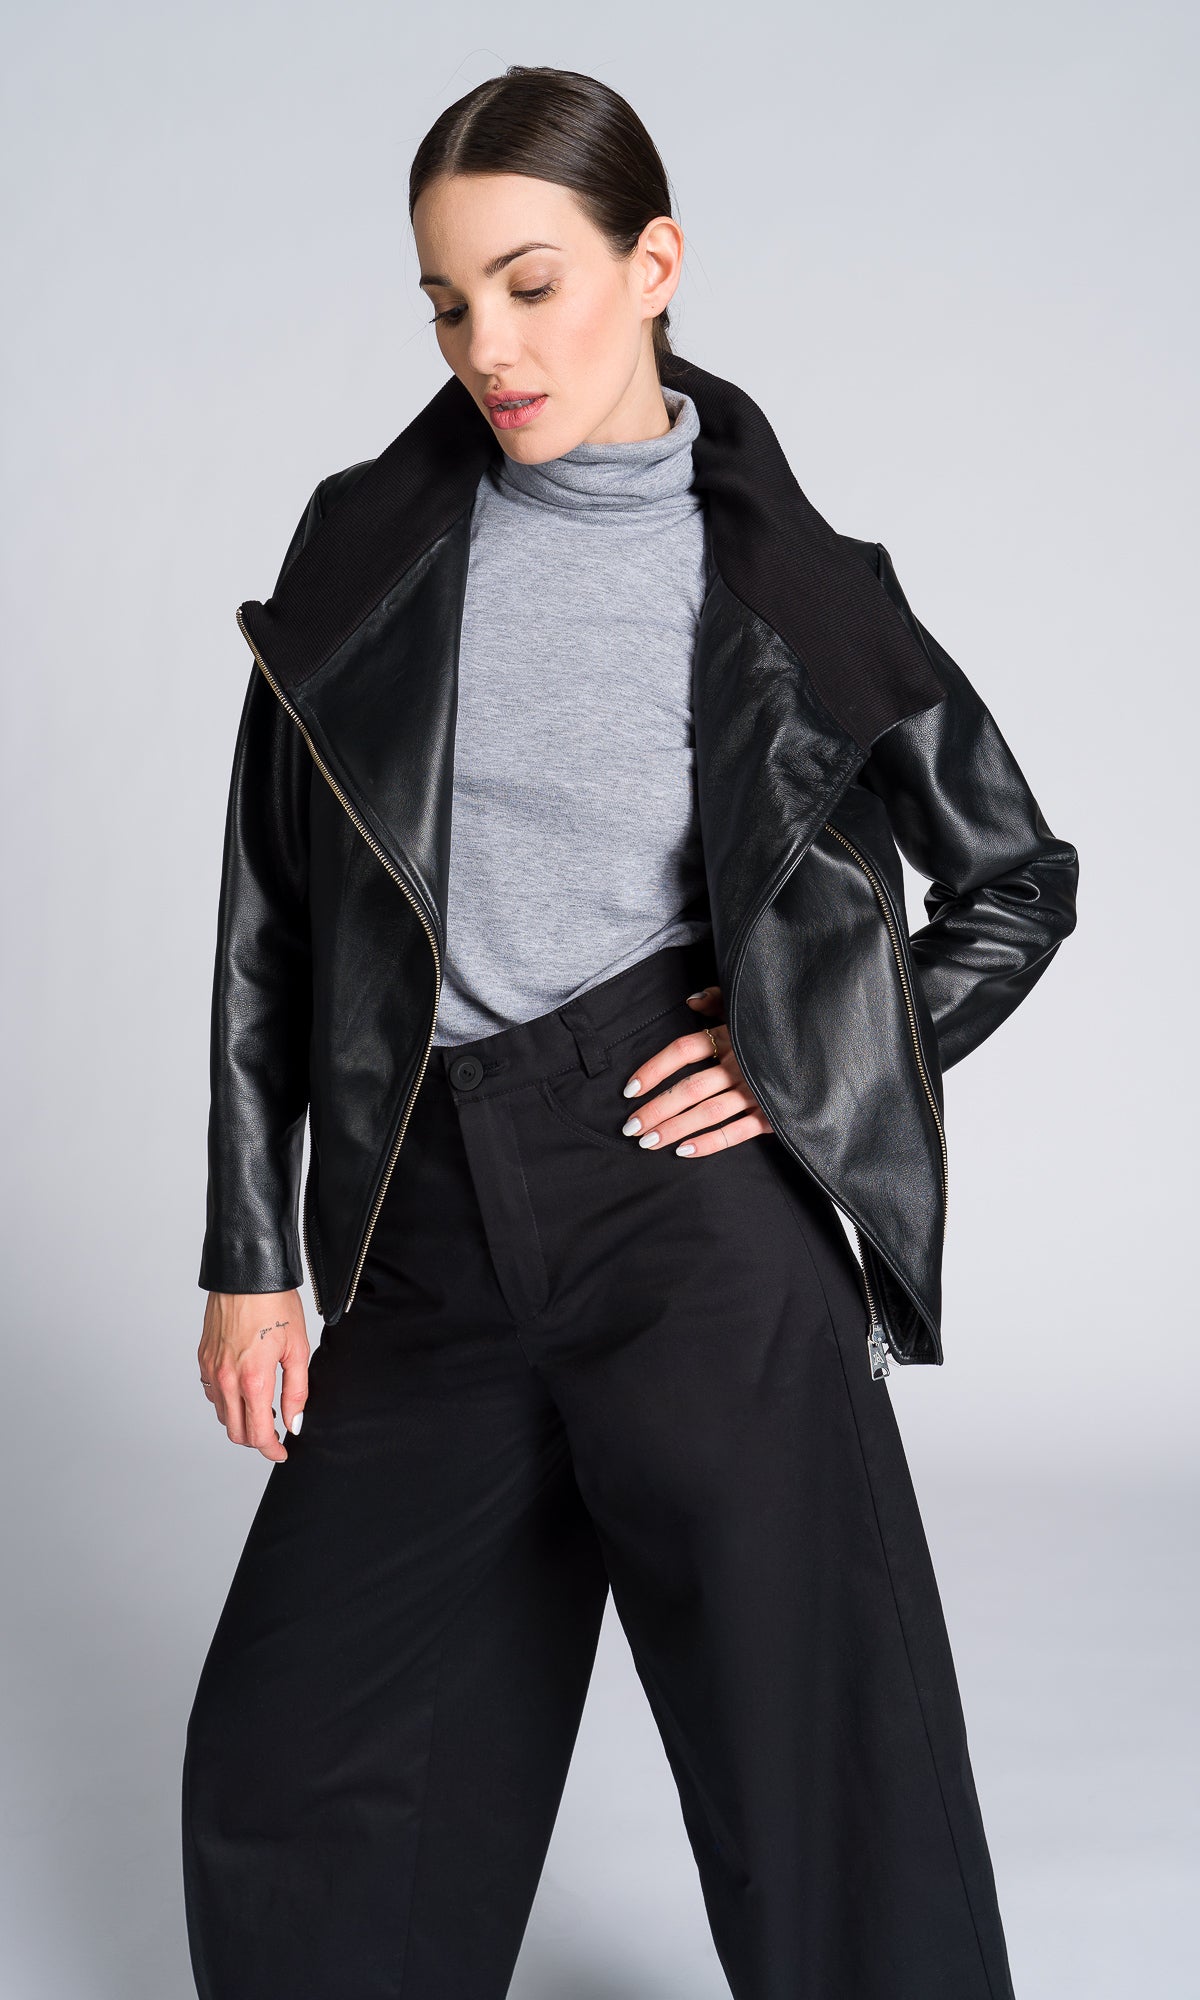 Asymmetric Zipper Leather Jacket